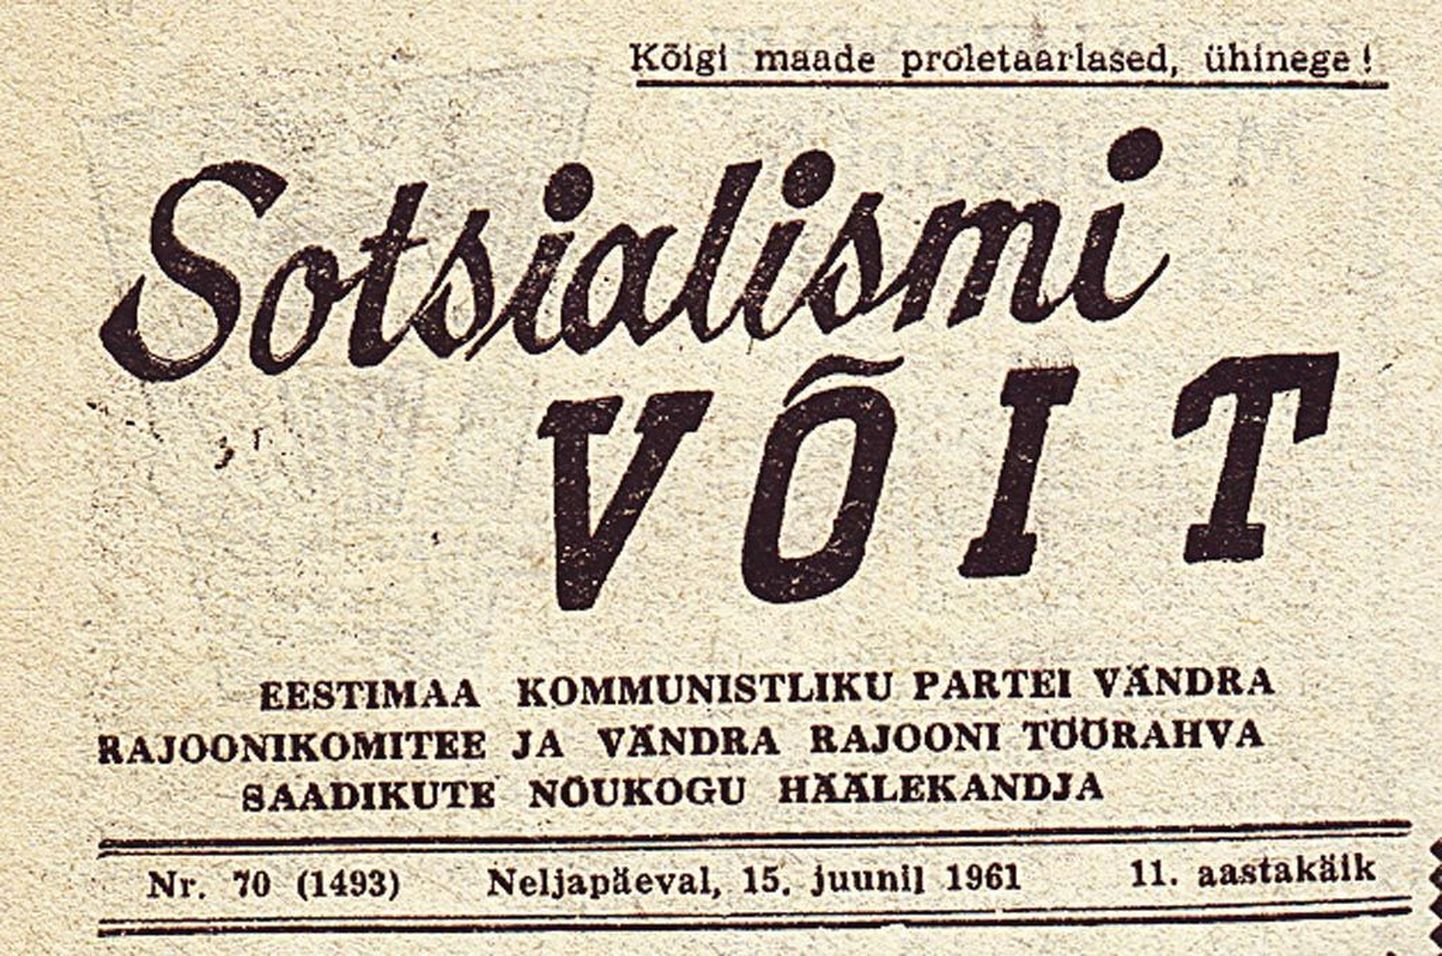 Esimene number Sotsialismi Võitu ilmus Vändras 6. juunil 1951, viimane 12. mail 1962.